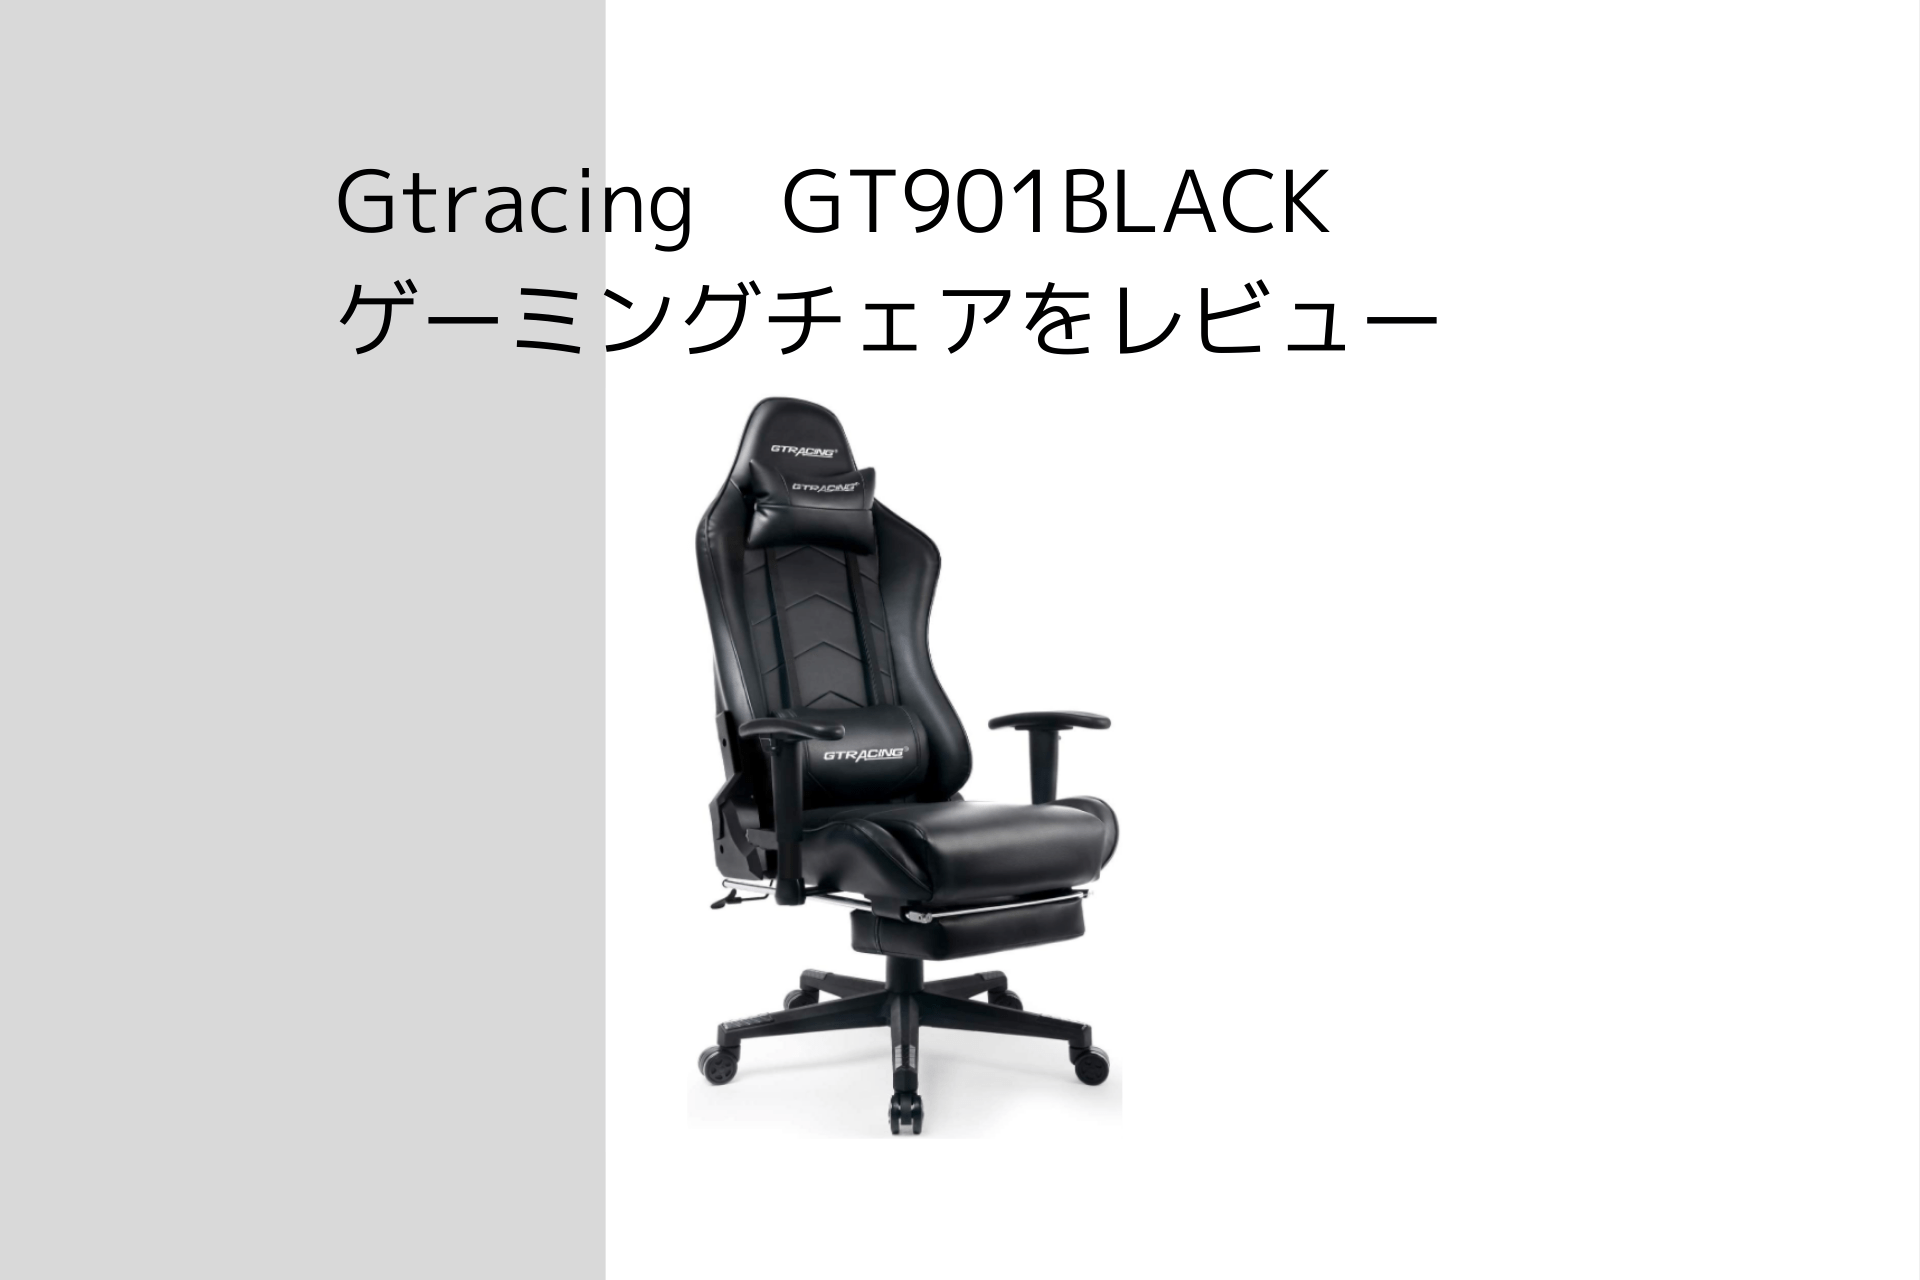 Gtracing】GT901BLACK ゲーミングチェアをレビュー【初めての方に 